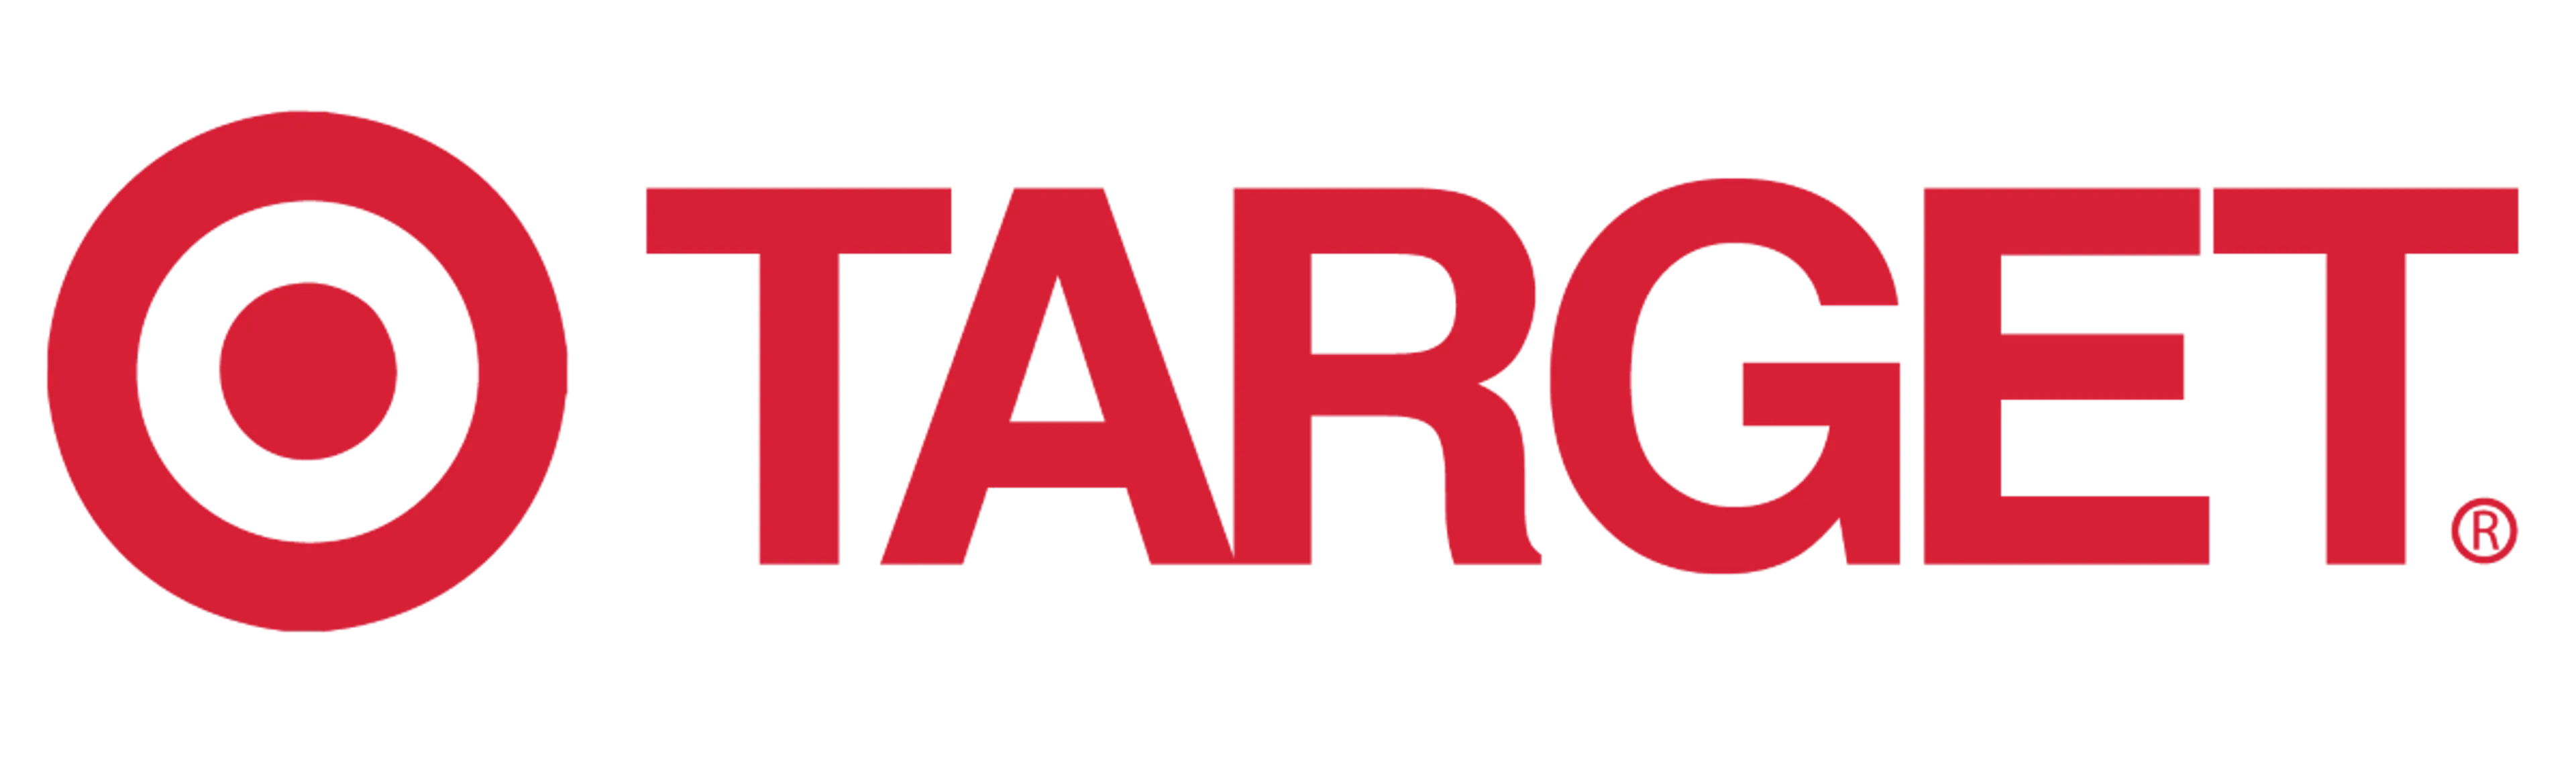 TARGET logo